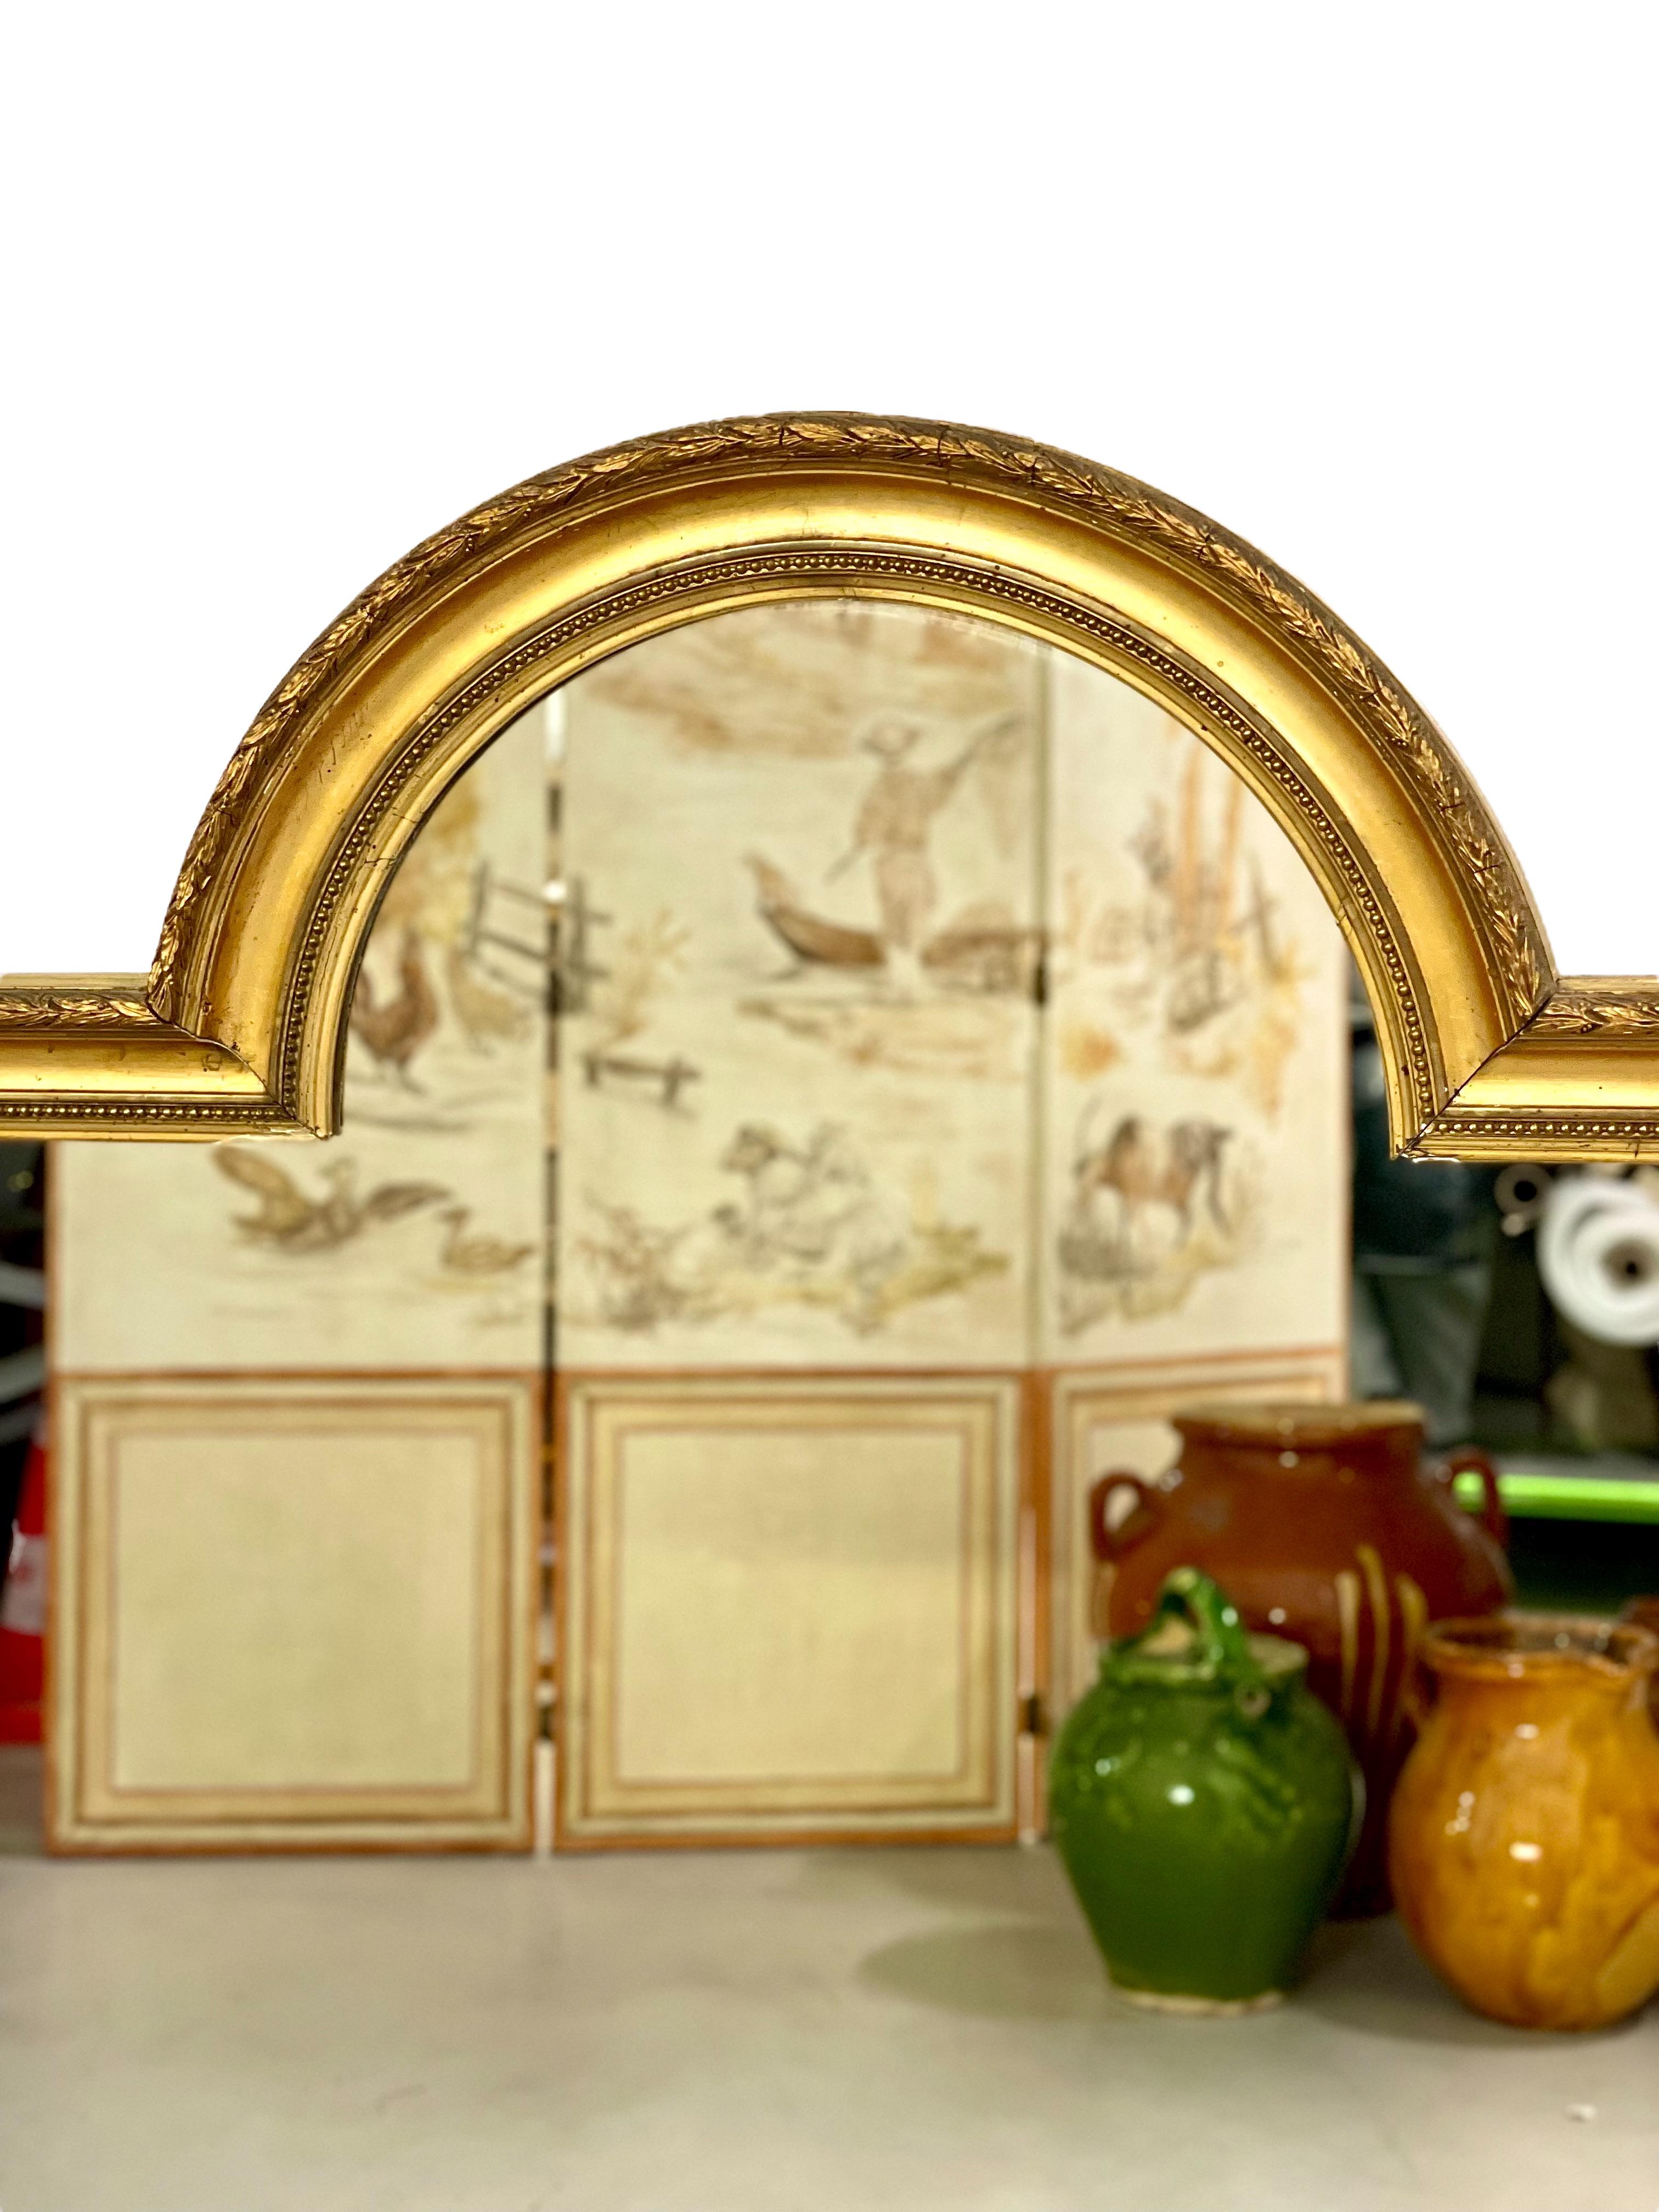 Ein interessanter und ungewöhnlich geformter Spiegel im Louis XVI-Stil mit zentralem Bogen, aus vergoldetem Holz und Stuck. Der äußere Rahmen besteht aus einer schlichten Kette aus Olivenblättern, während der innere Rand mit einer klassischen